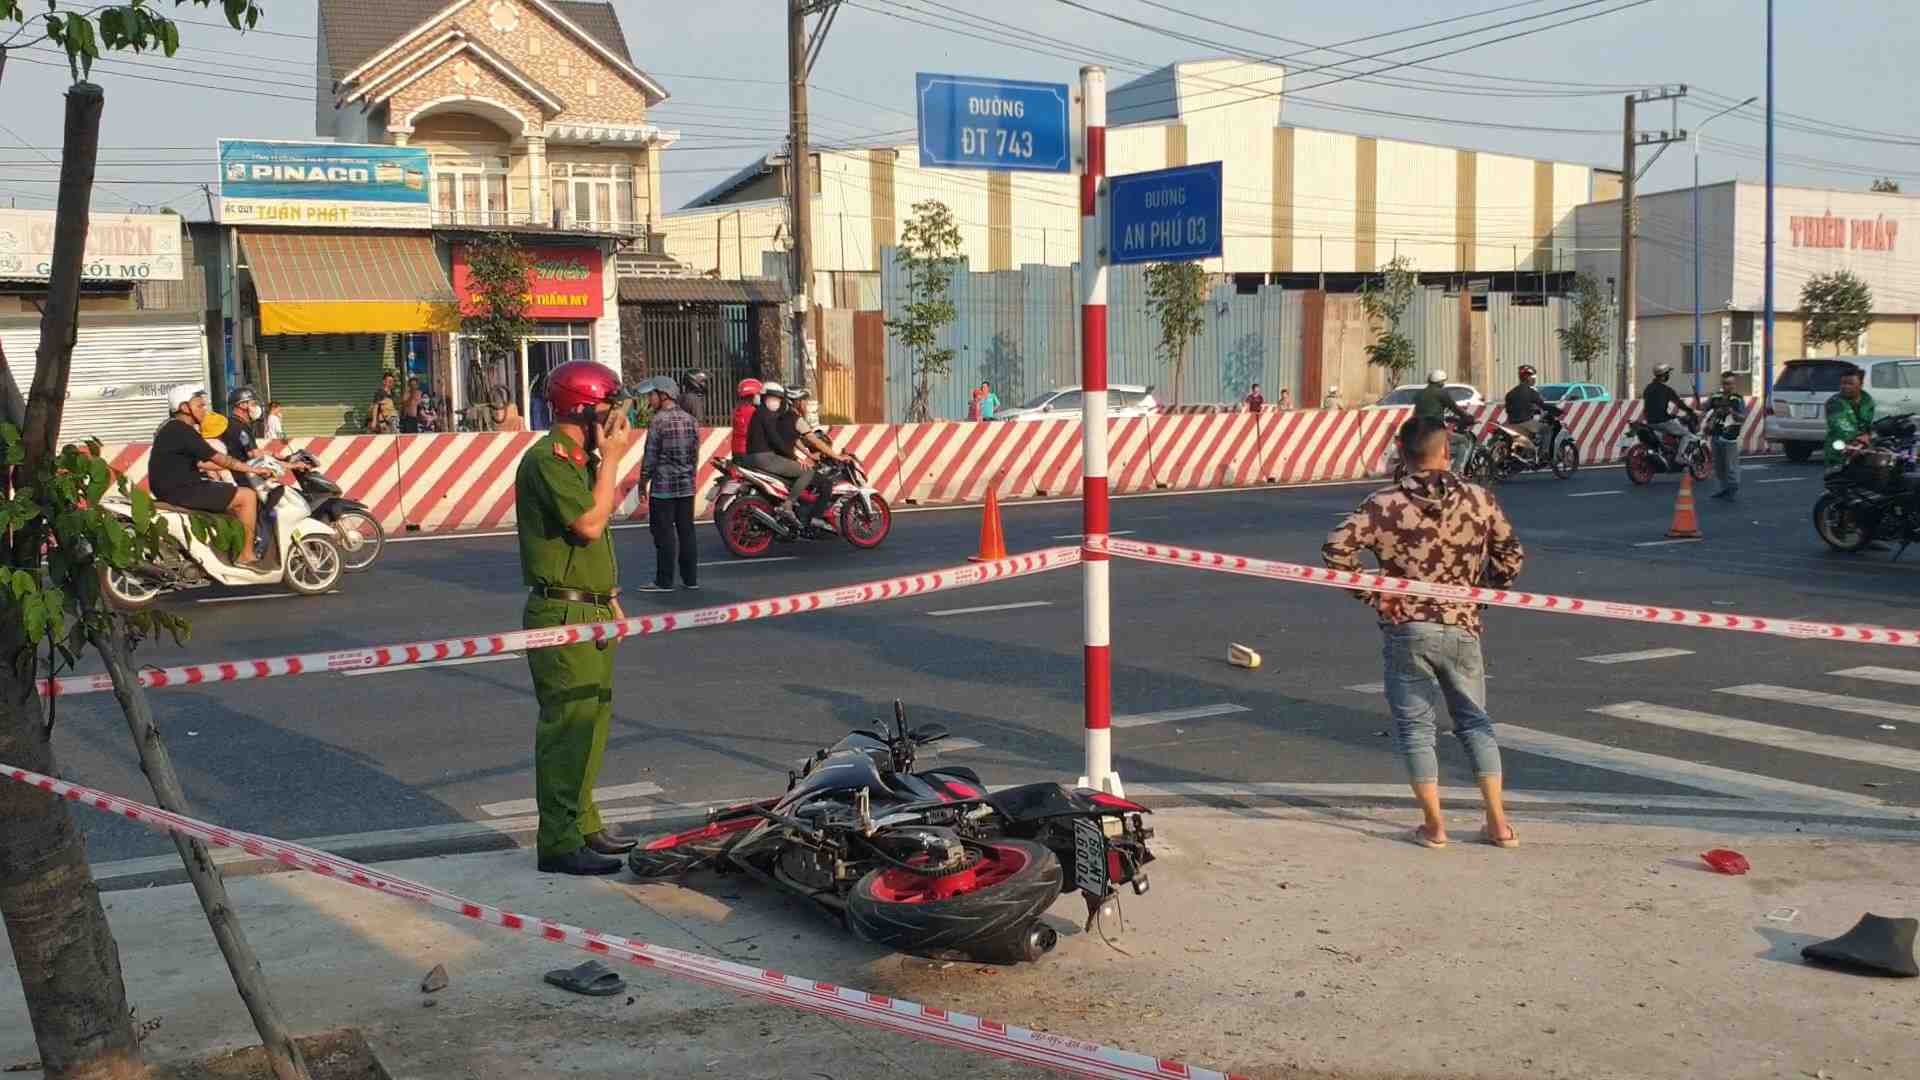 Khi xe ô tô đi đến đoạn giao nhau với đường An Phú 03 thuộc phường An Phú thành phố Thuận An thì tông vào 3 xe máy.